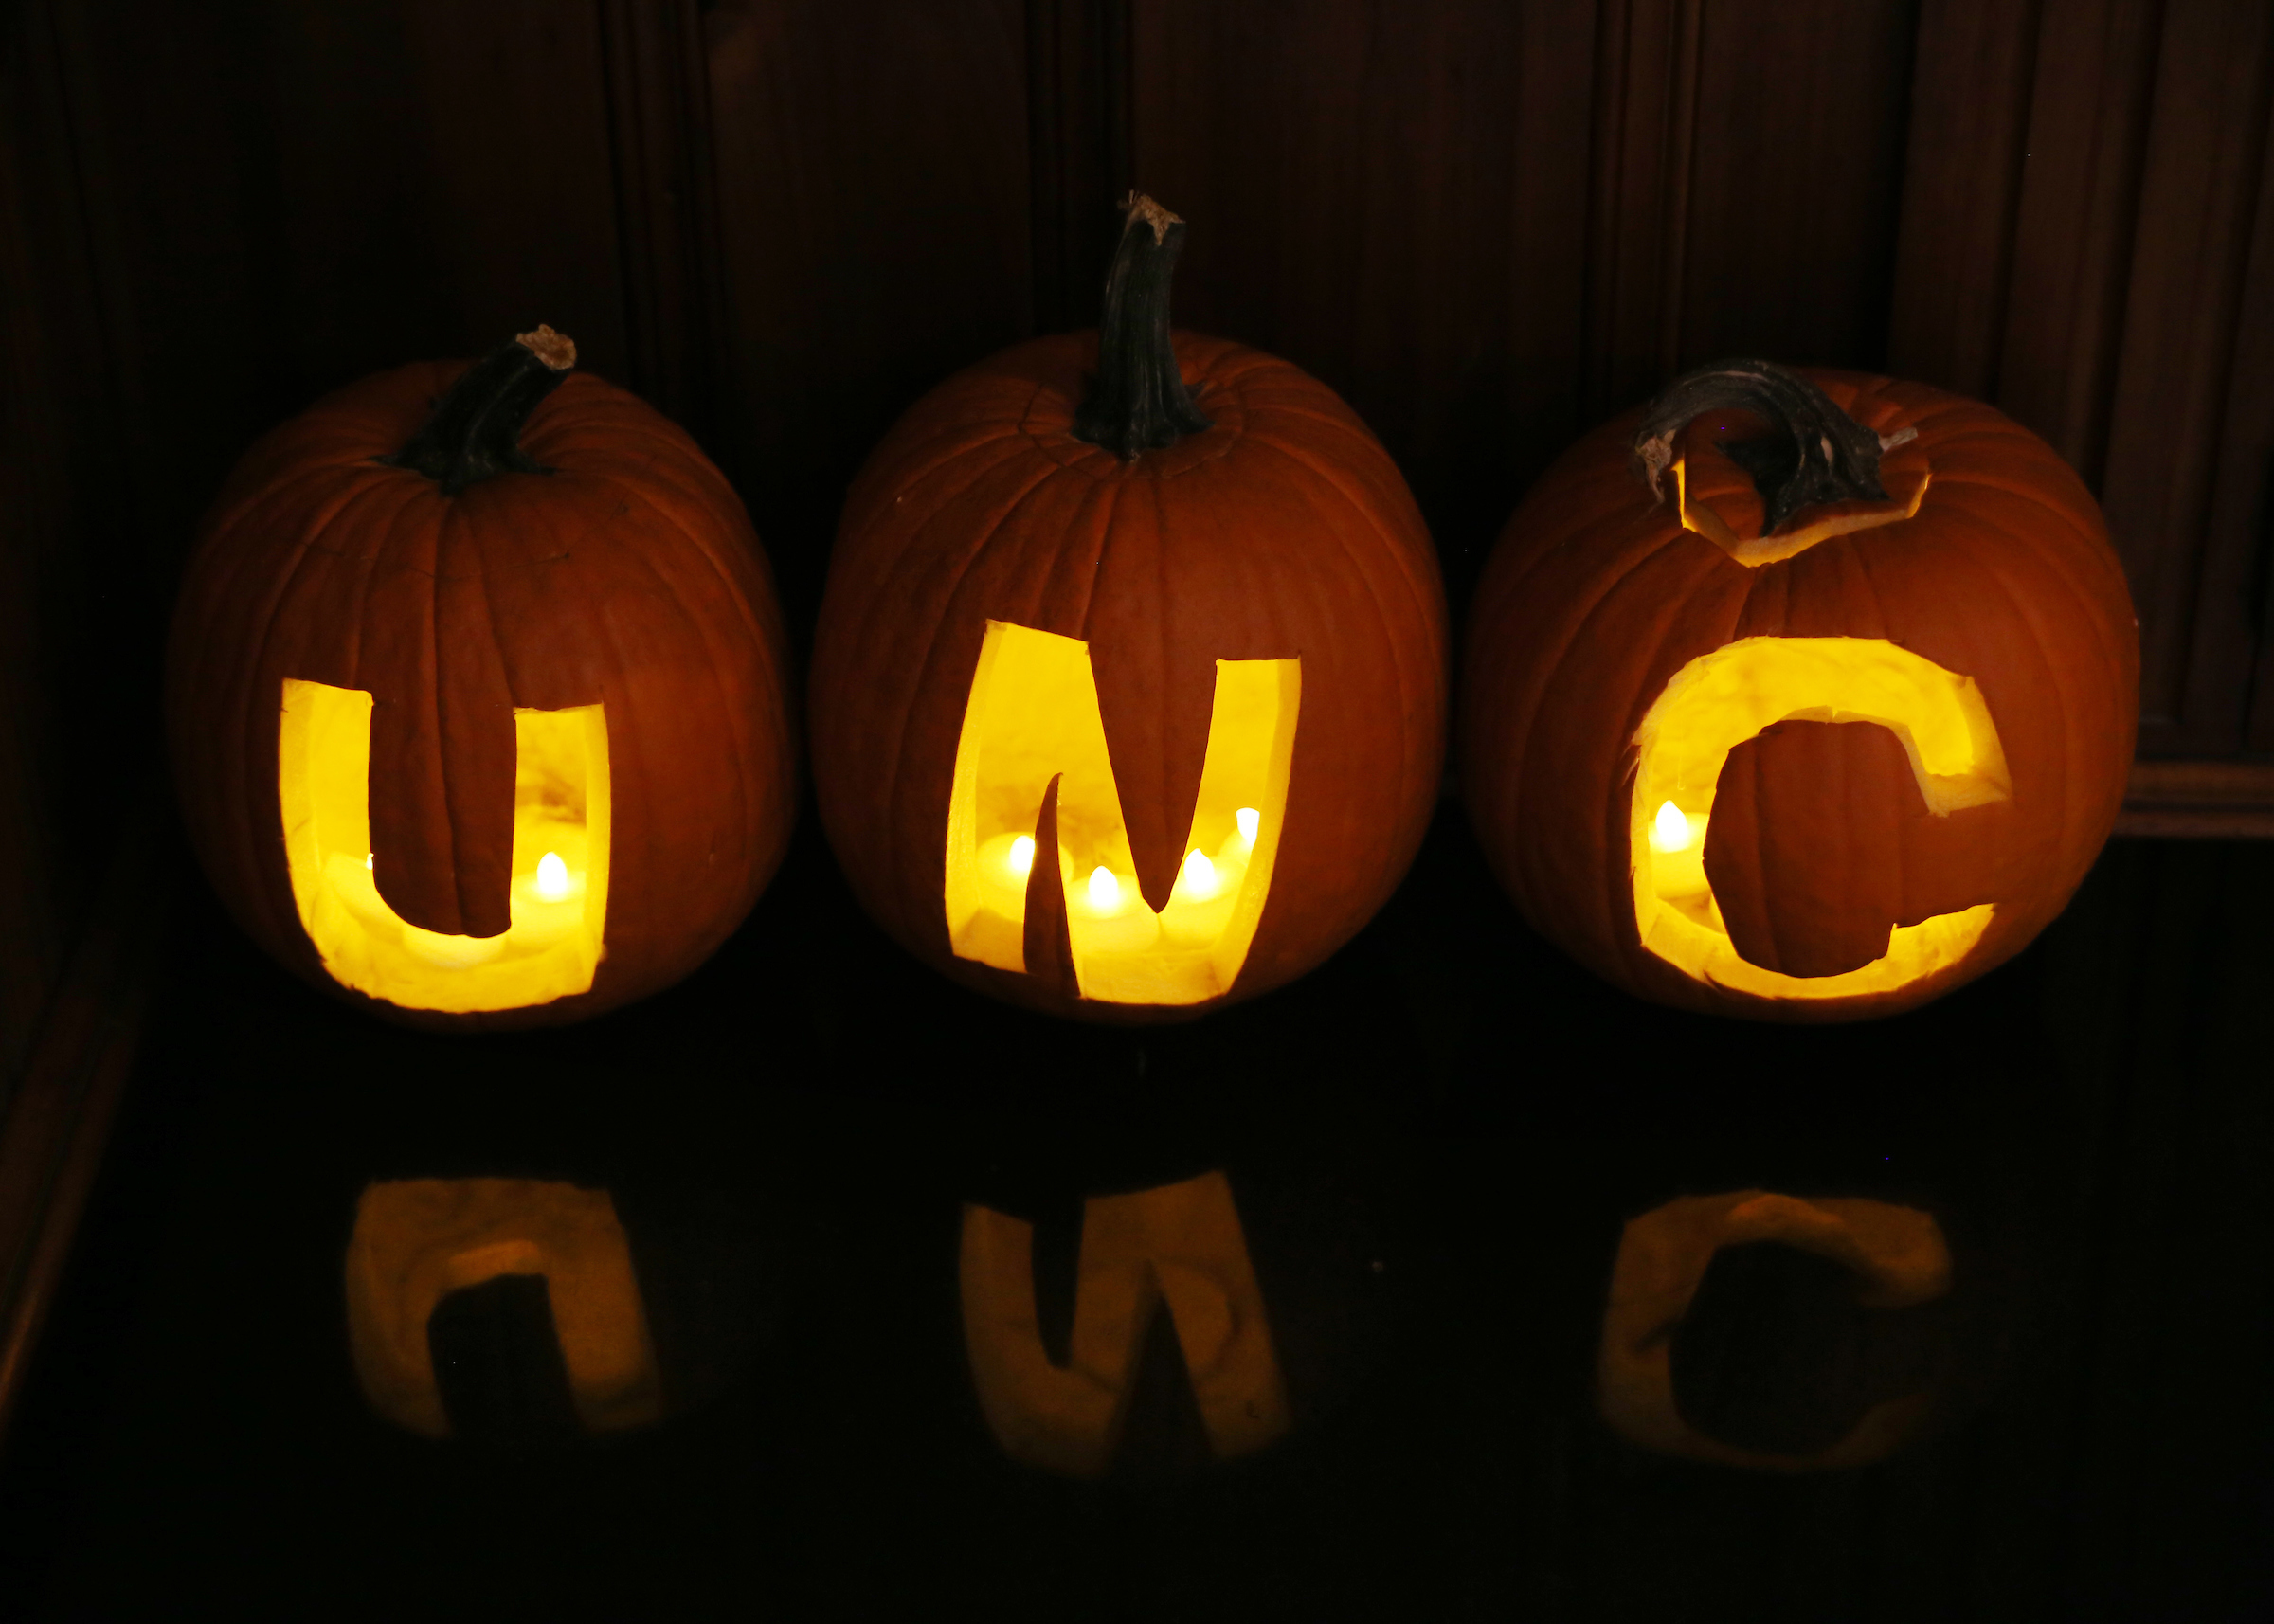 Carved pumpkins that read U-N-C